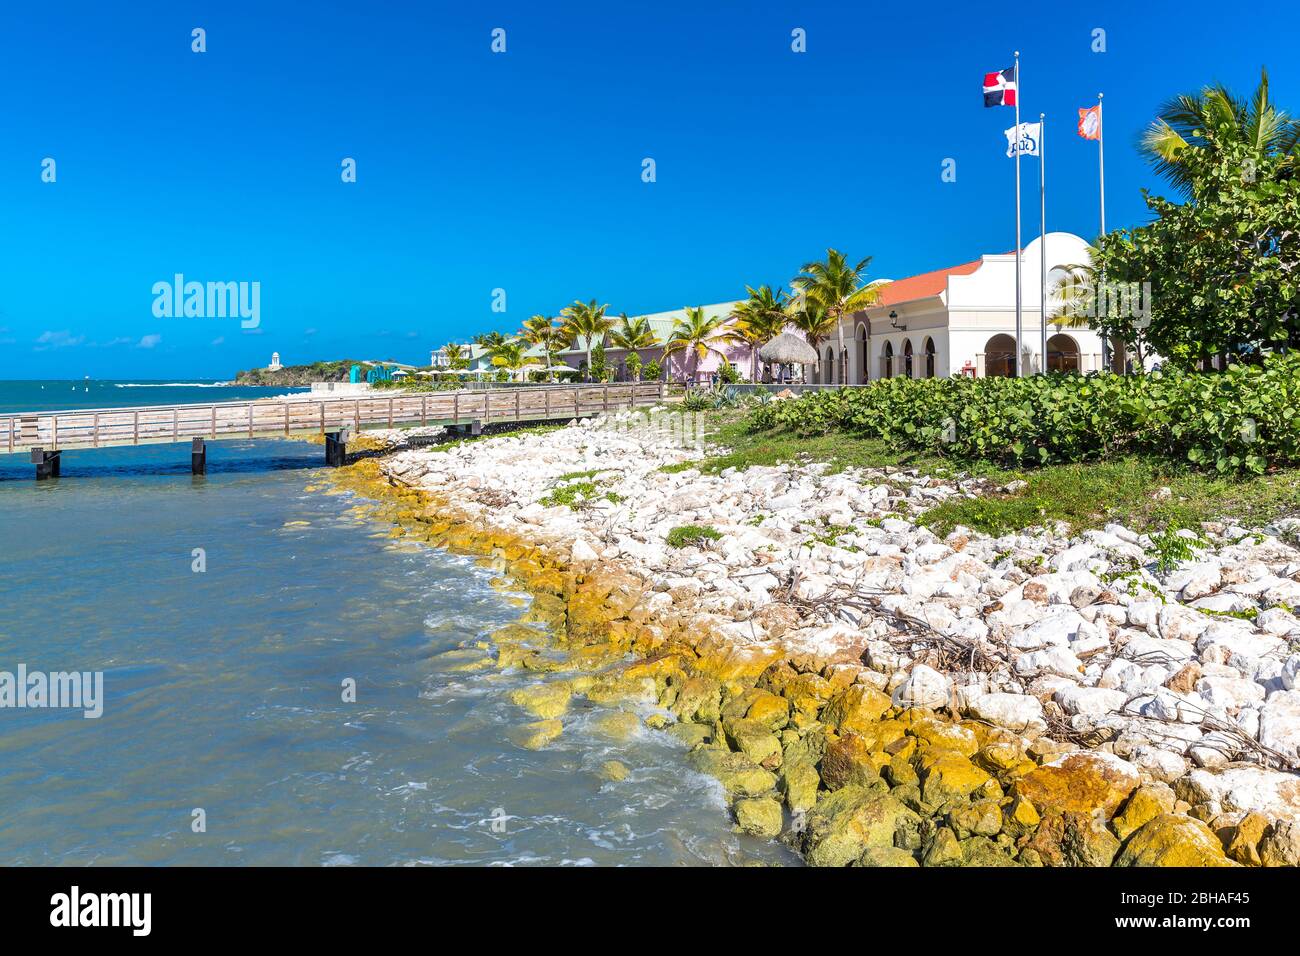 Touristenzentrum, Amber Cove Cruise Terminal, Hafen, Maimón, Dominikanische Republik, Große Antillen, Karibik, Atlantik, Mittelamerika Stock Photo